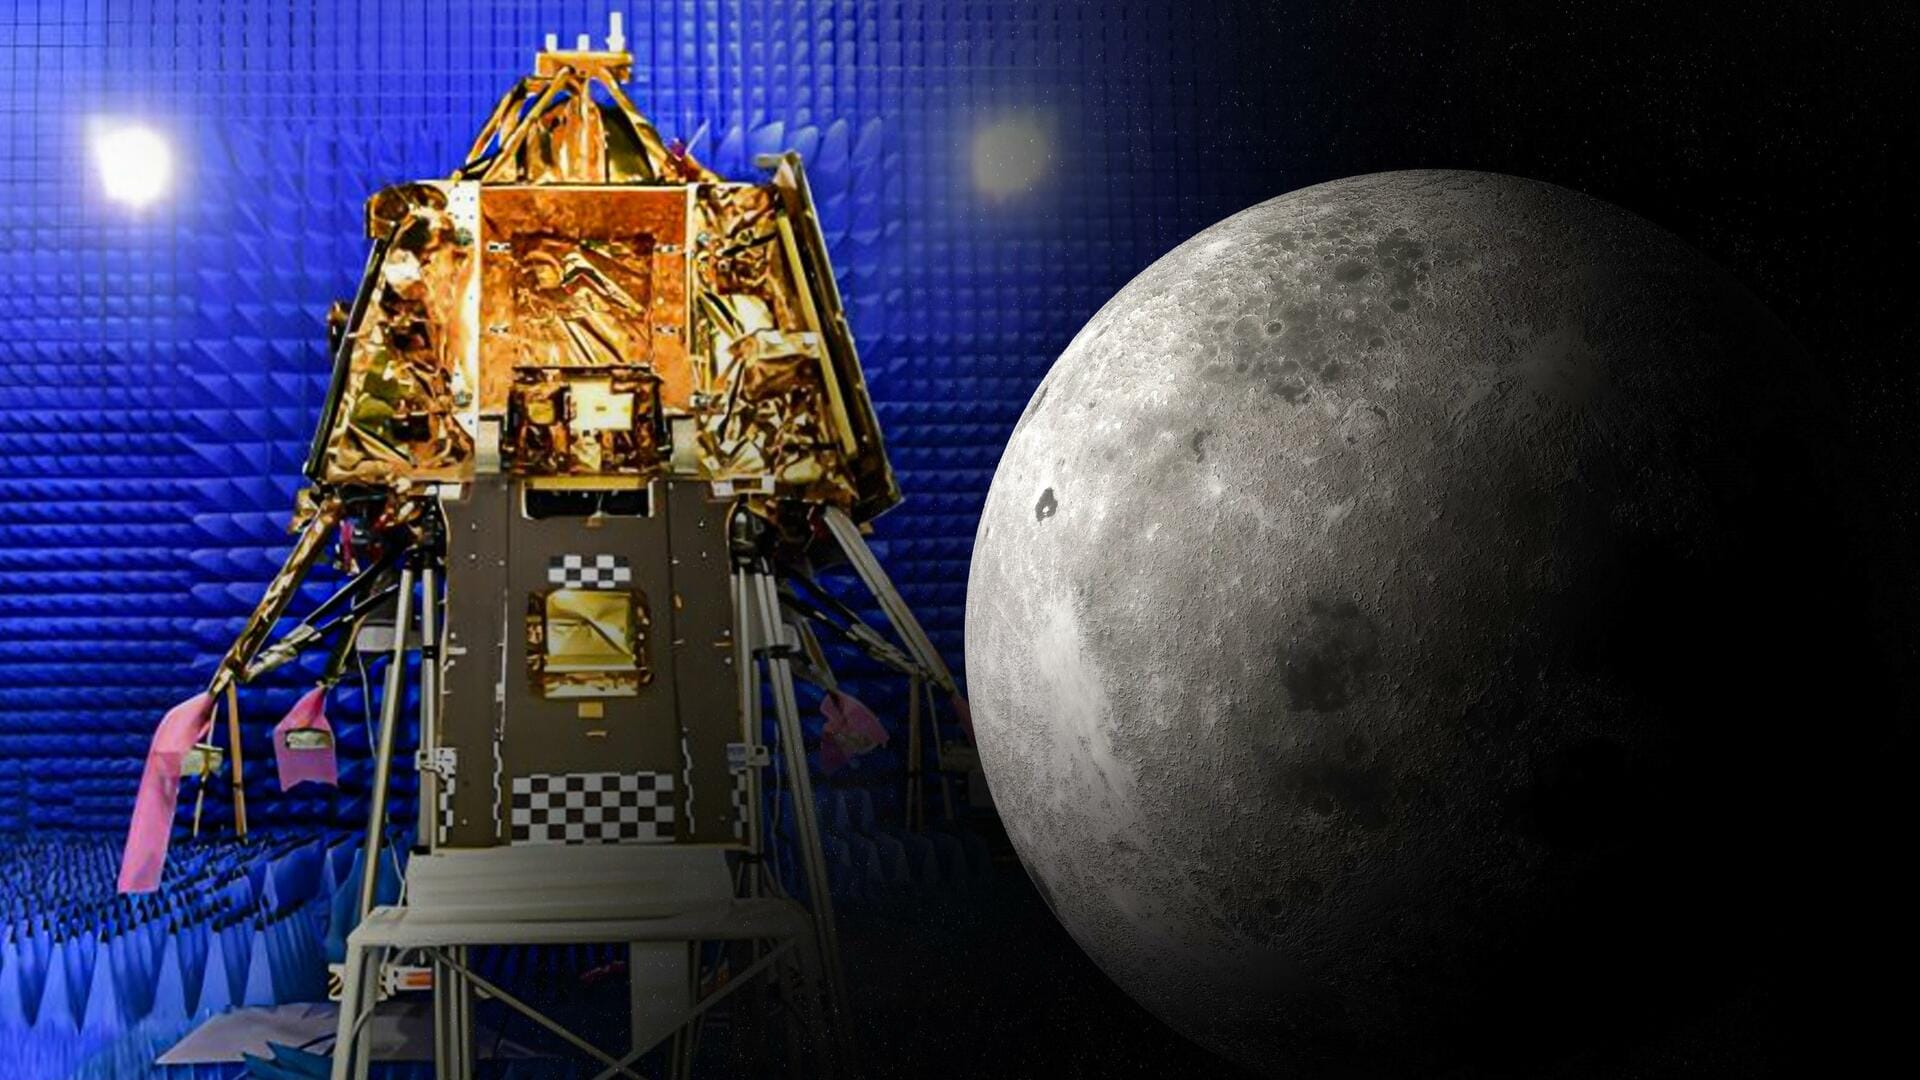 भारत को अंतरिक्ष में मिली बड़ी कामयाबी, मून मिशन में चंद्रयान-3 का अहम परीक्षण, बेंगलुरु में सफलतापूर्वक पूरा किया टेस्ट